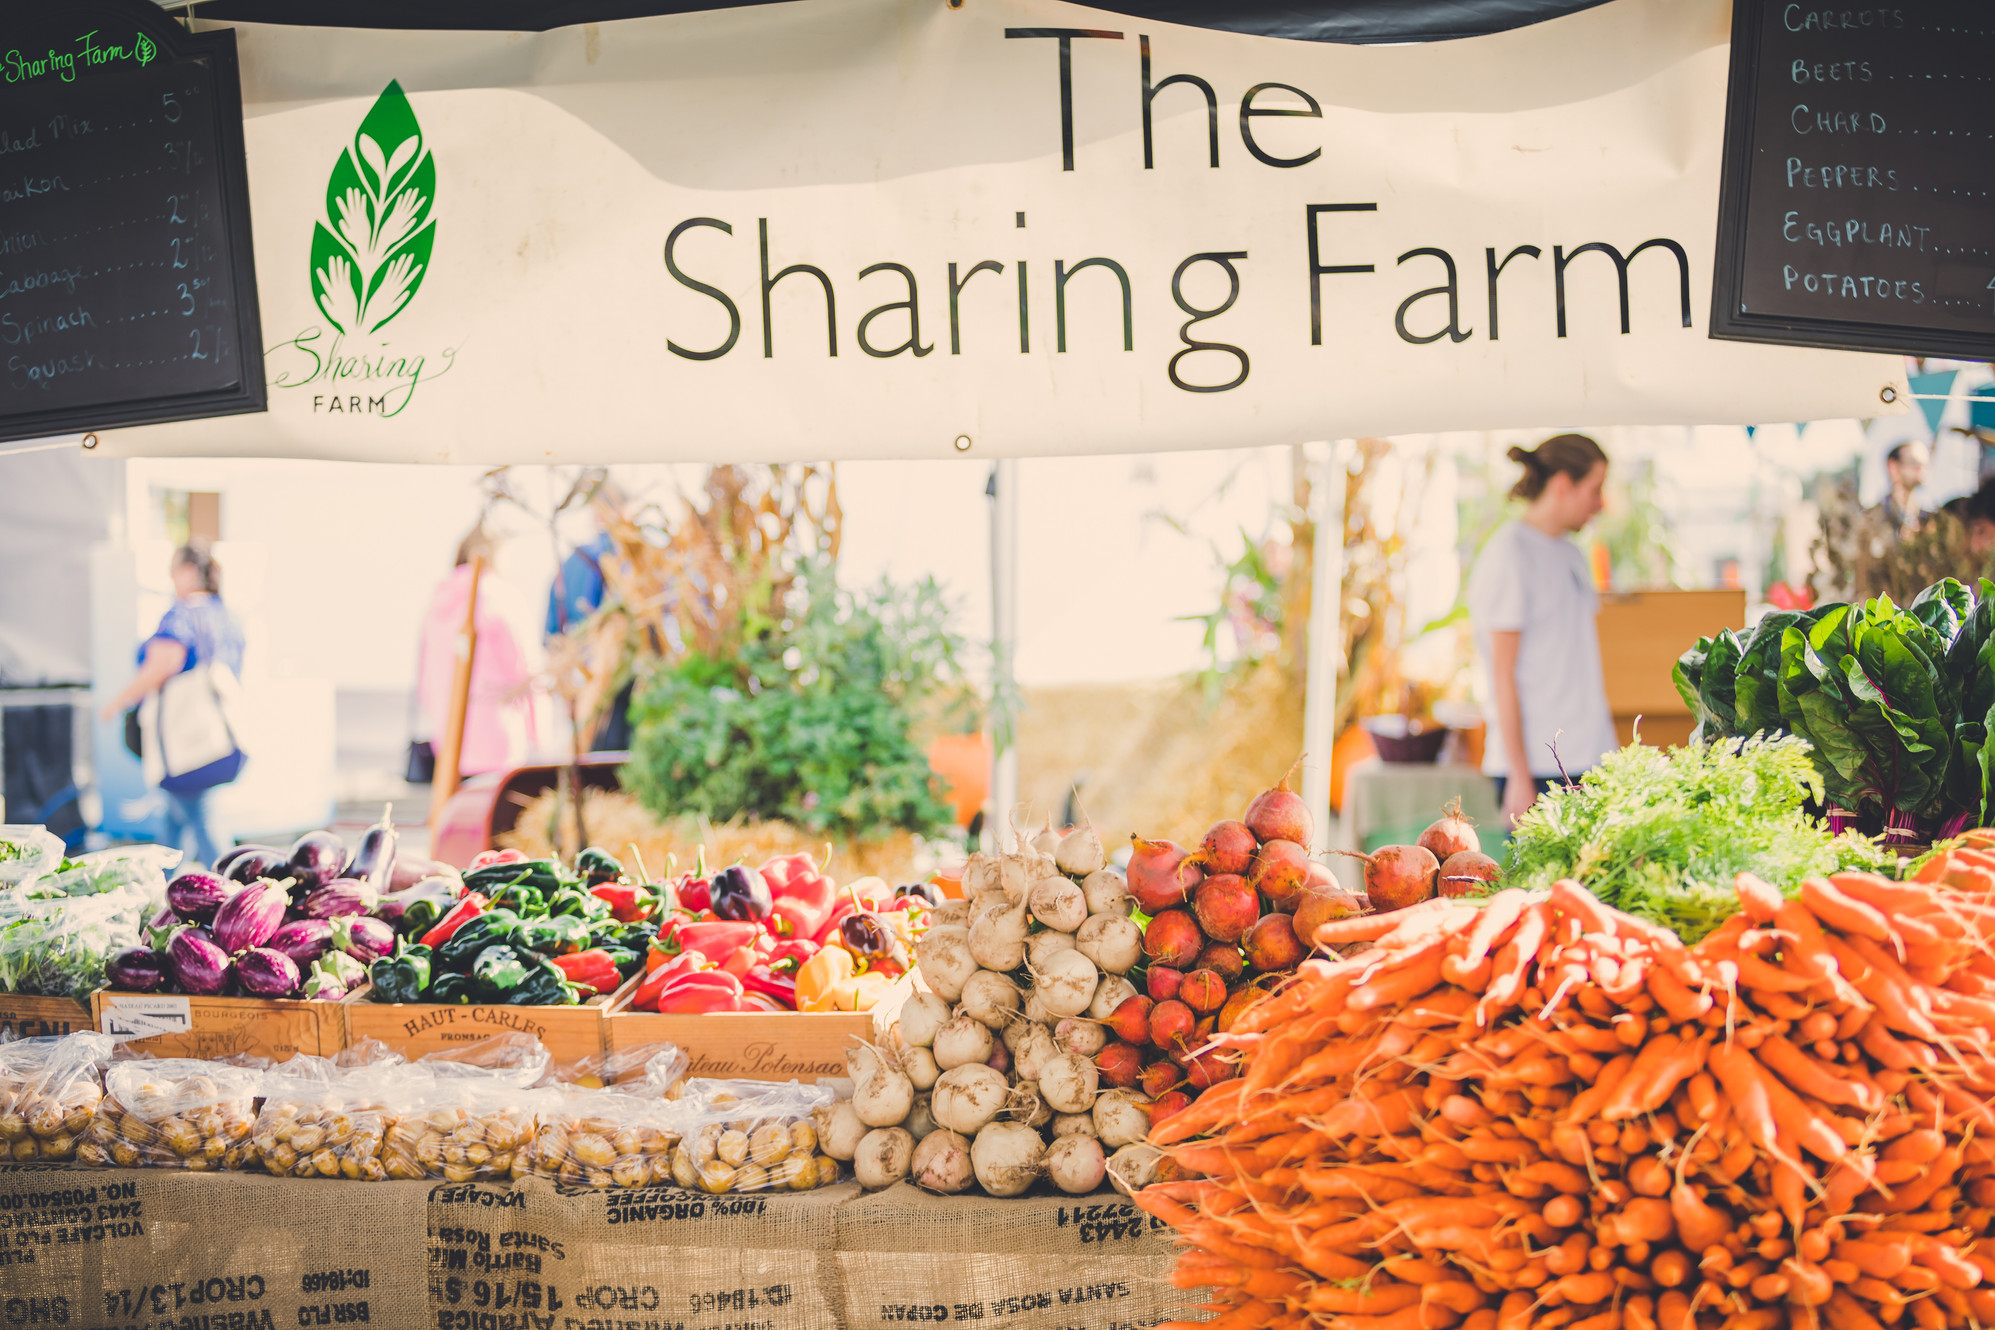 The Sharing Farm Society